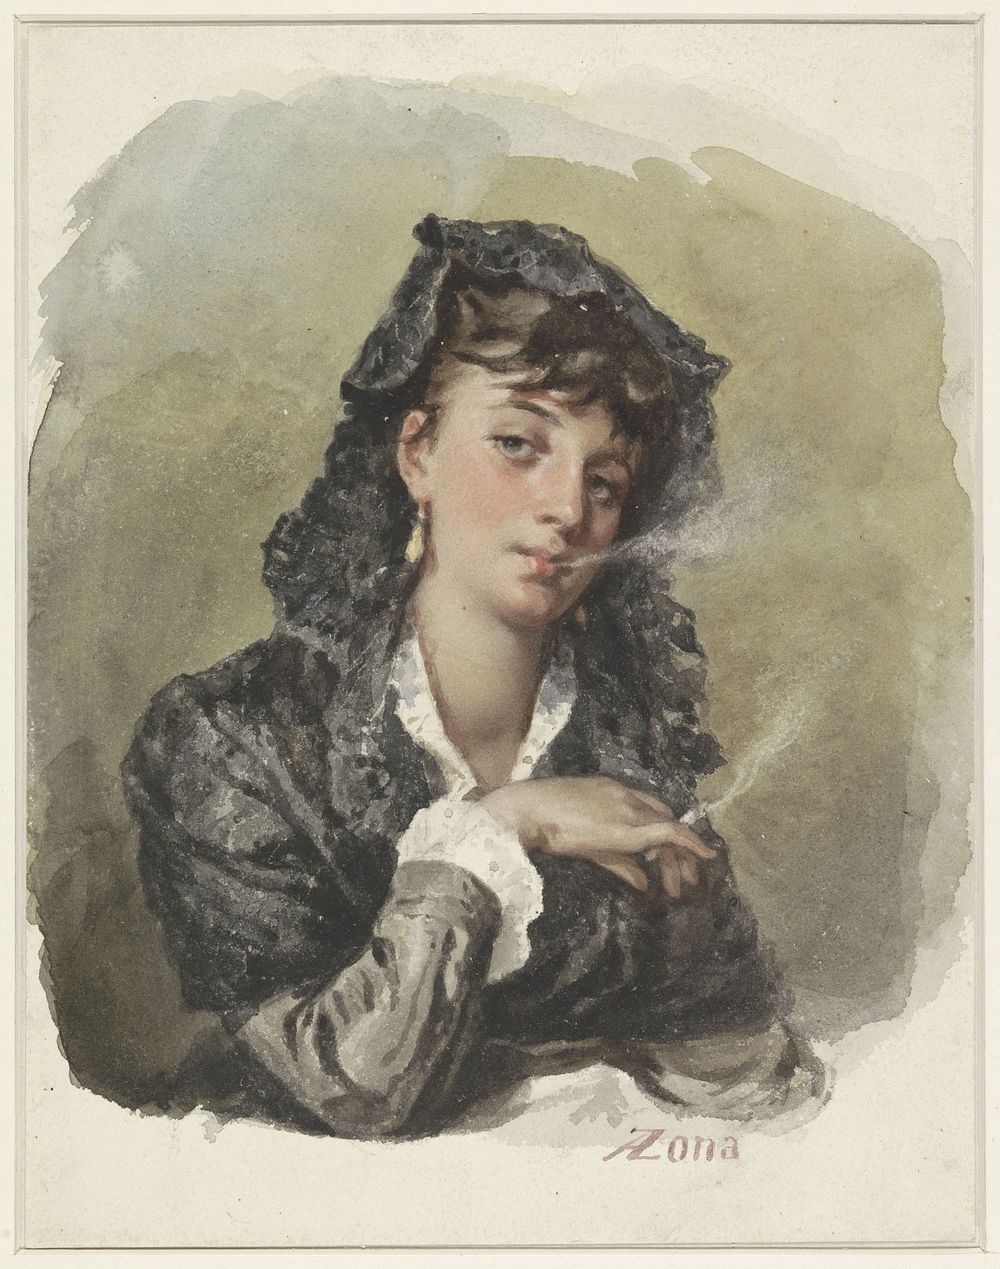 Jonge vrouw met een sigaret (1823 - 1892) by Antonio Zona